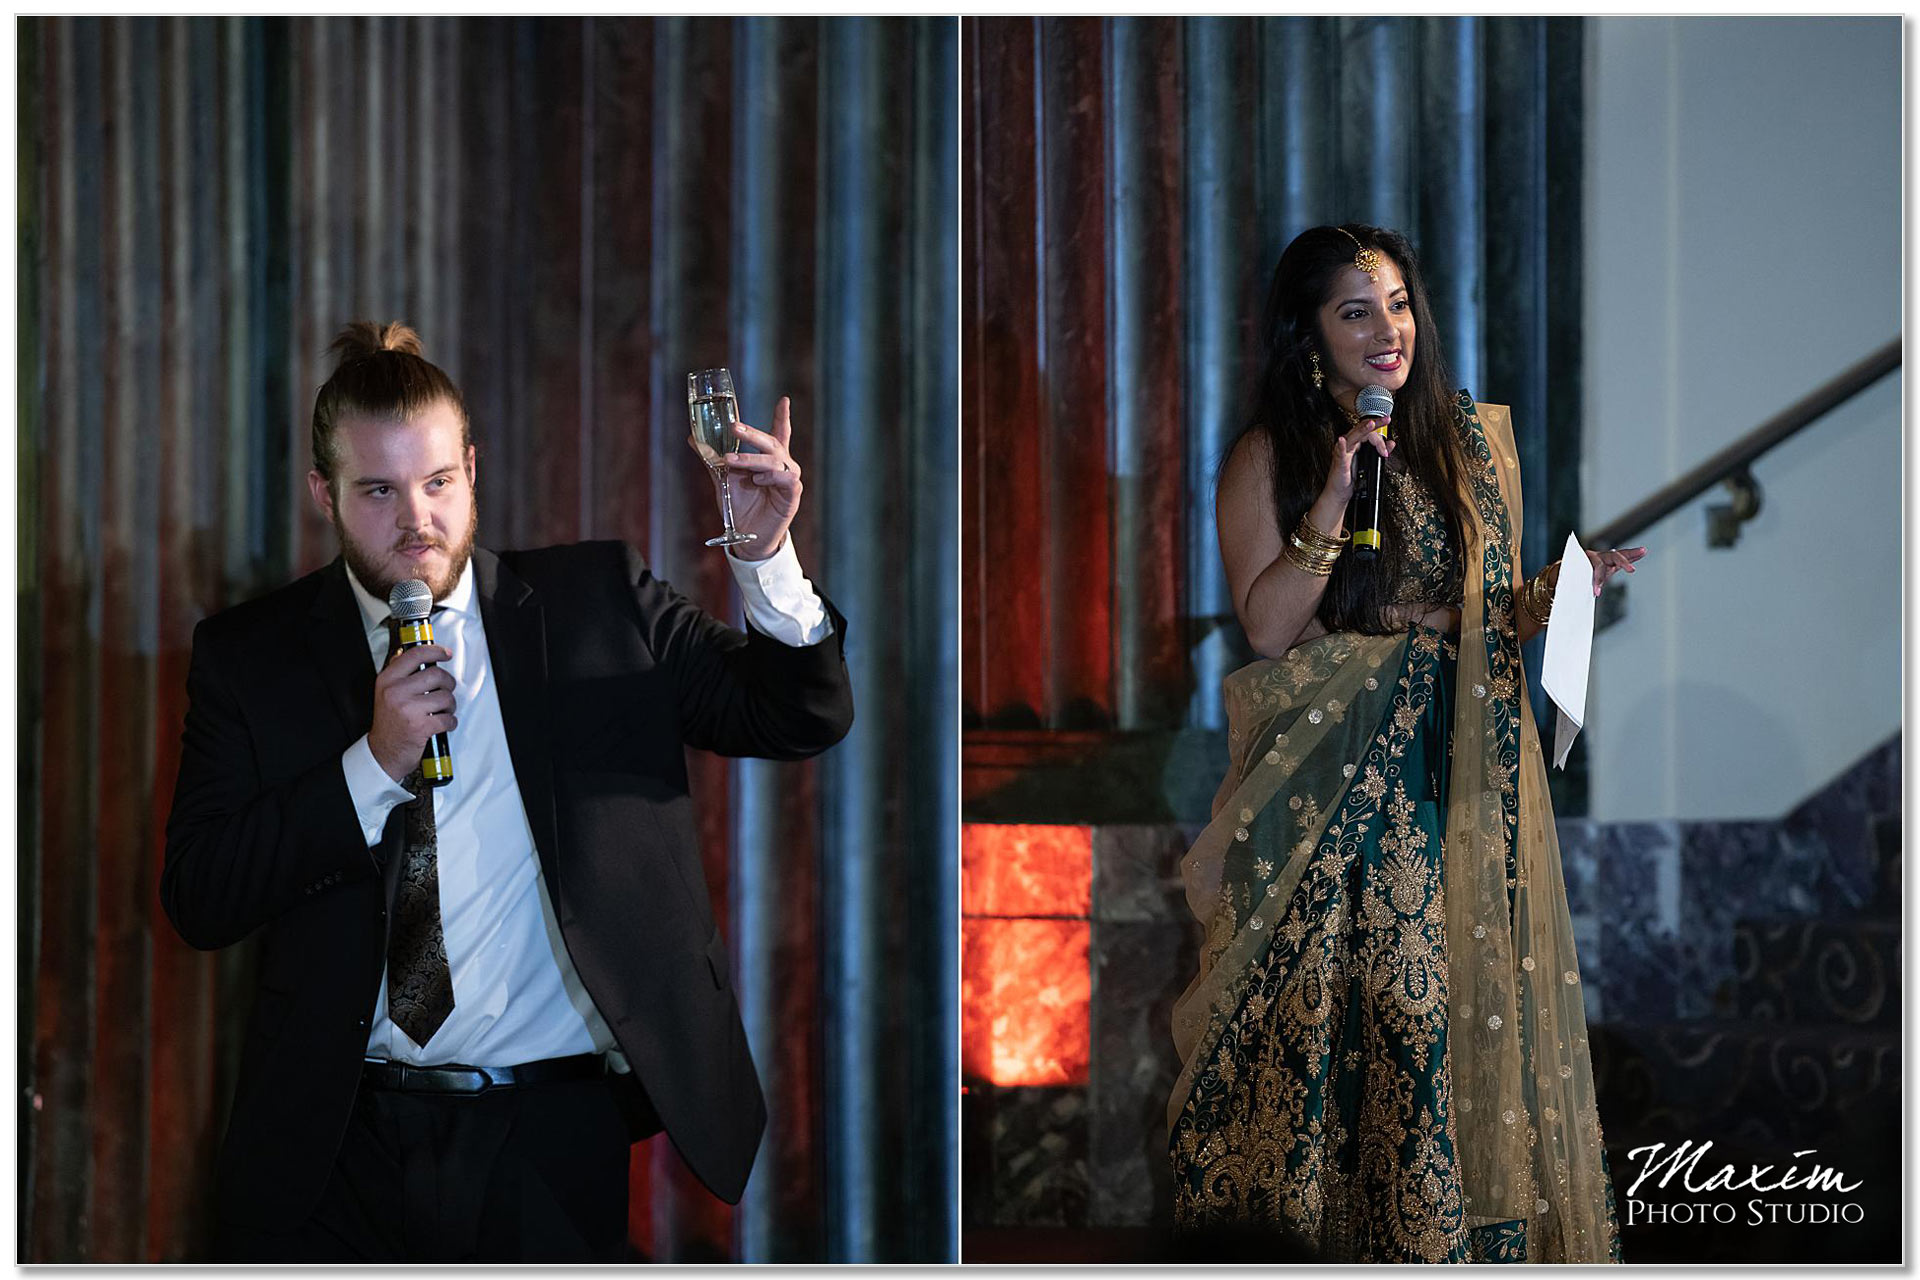 Hilton Netherland Plaza Hindu Wedding Reception toasts